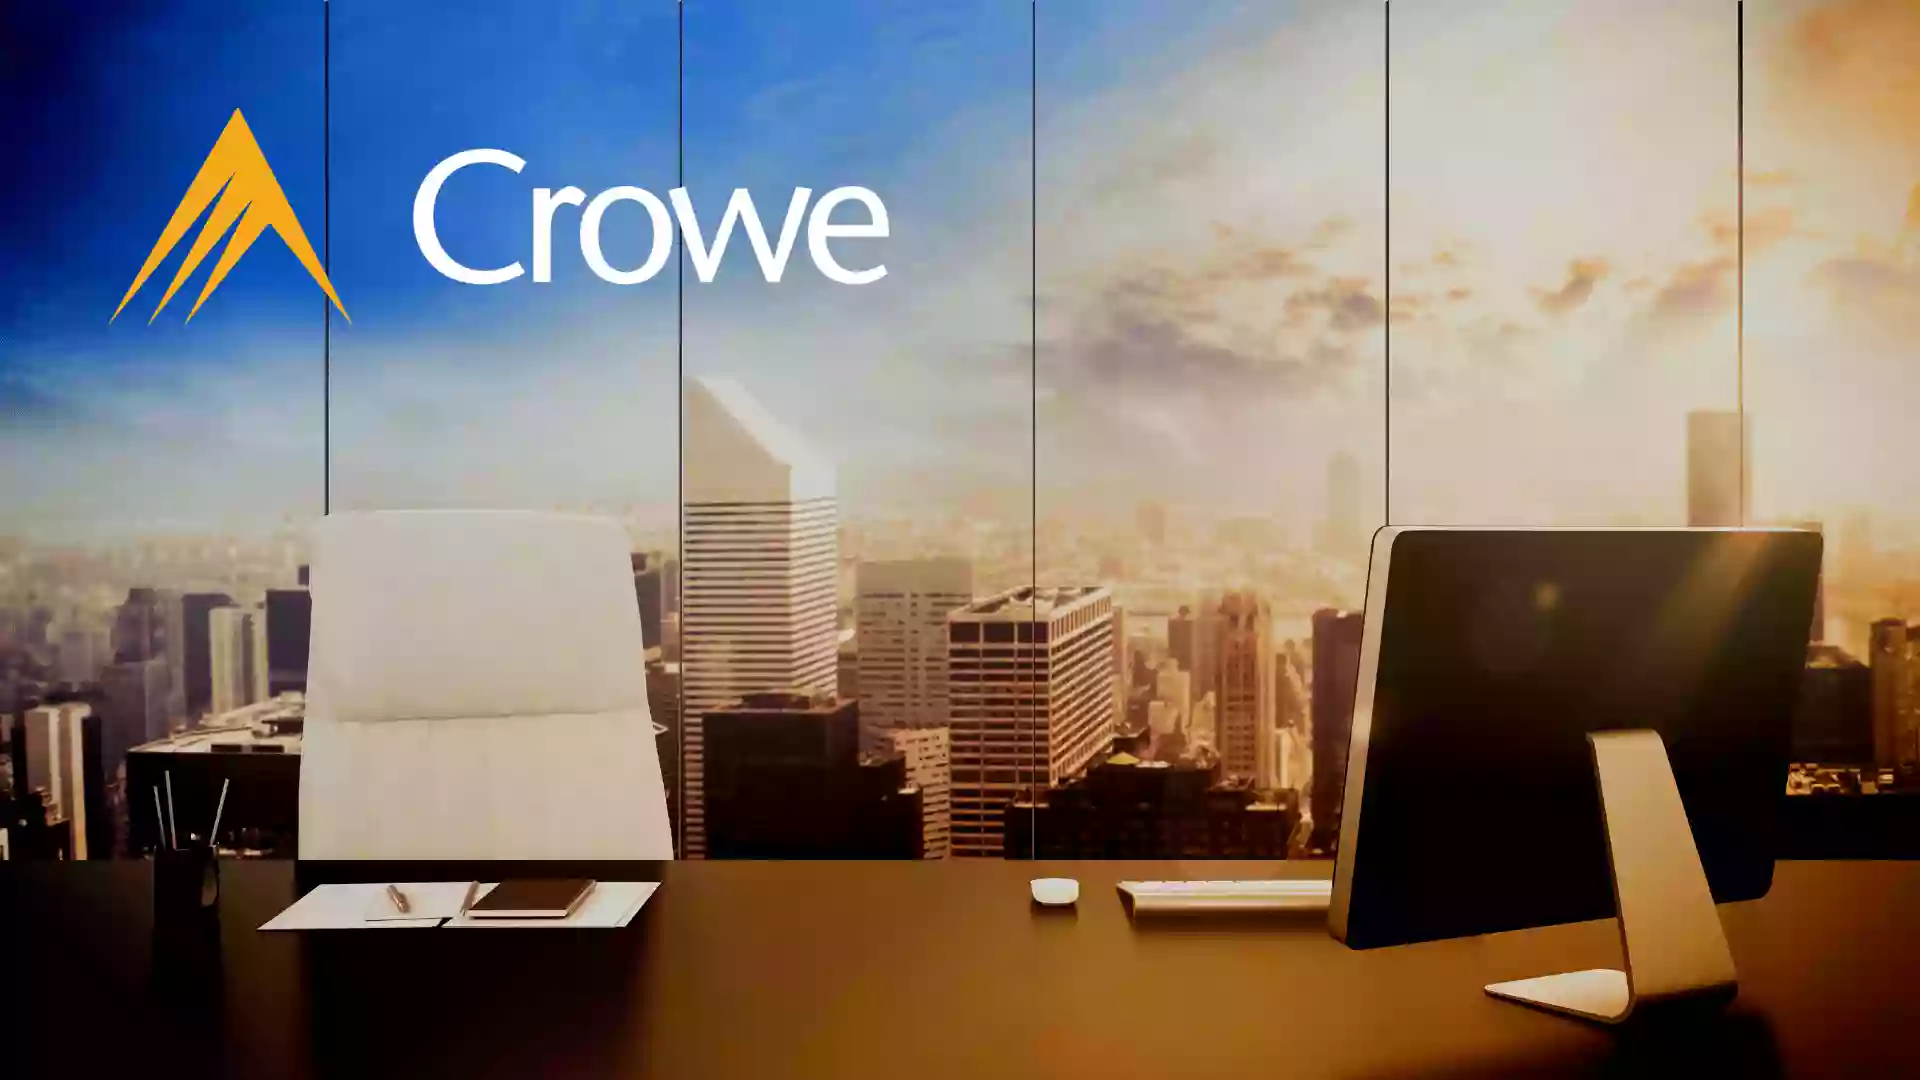 (AA Crowe) Crowe Erfolg / Crowe audit and accounting Ukraine